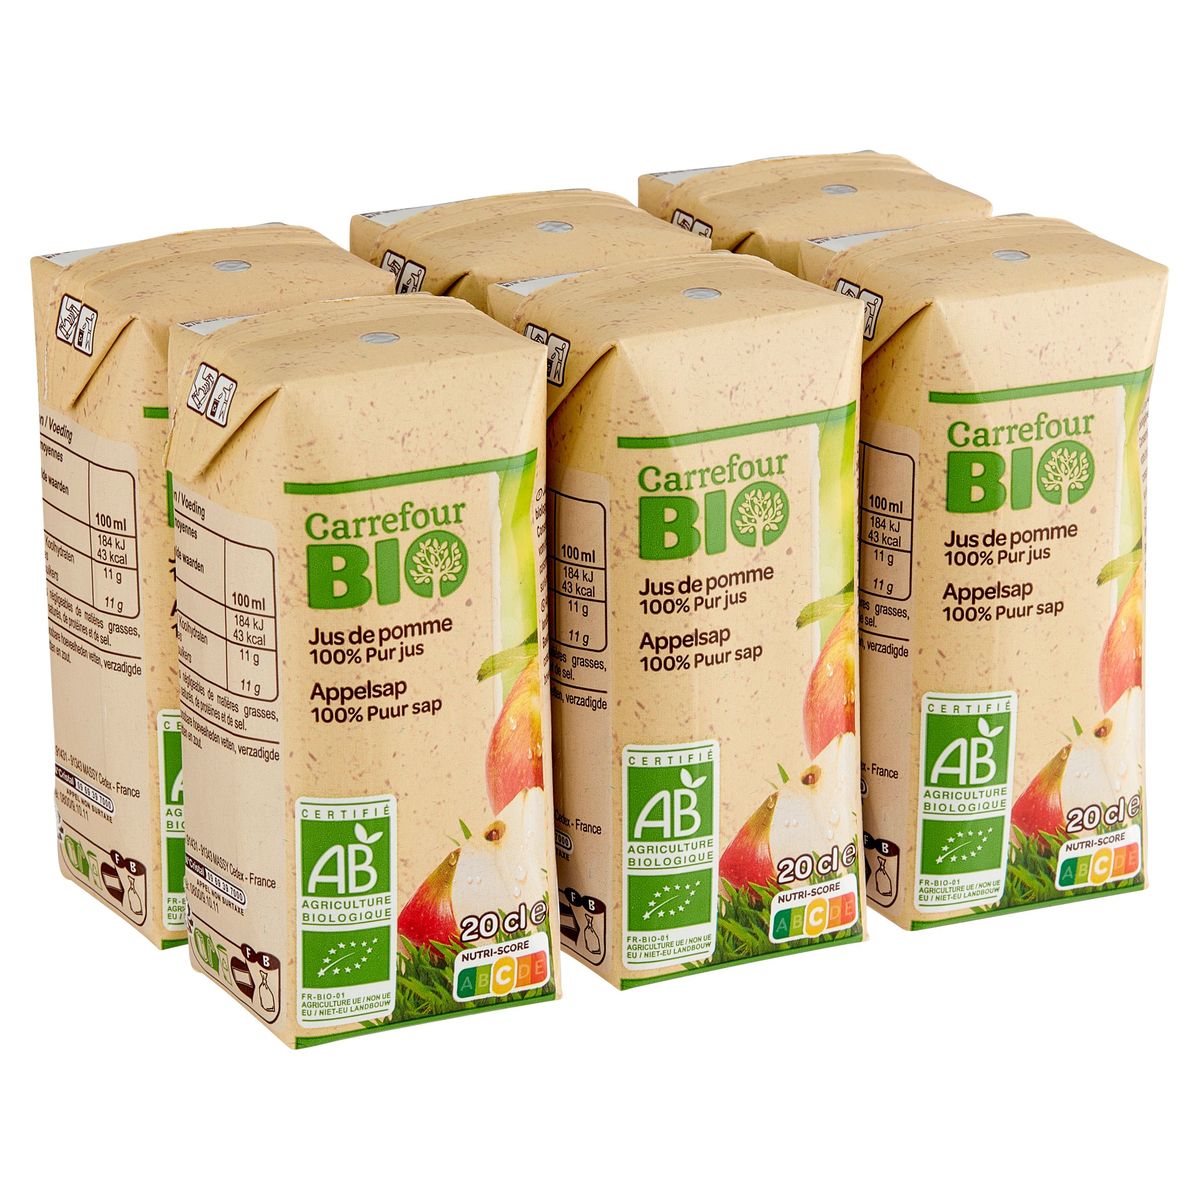 Carrefour Bio Appelsap 100% Puur Sap 6 x 20 cl